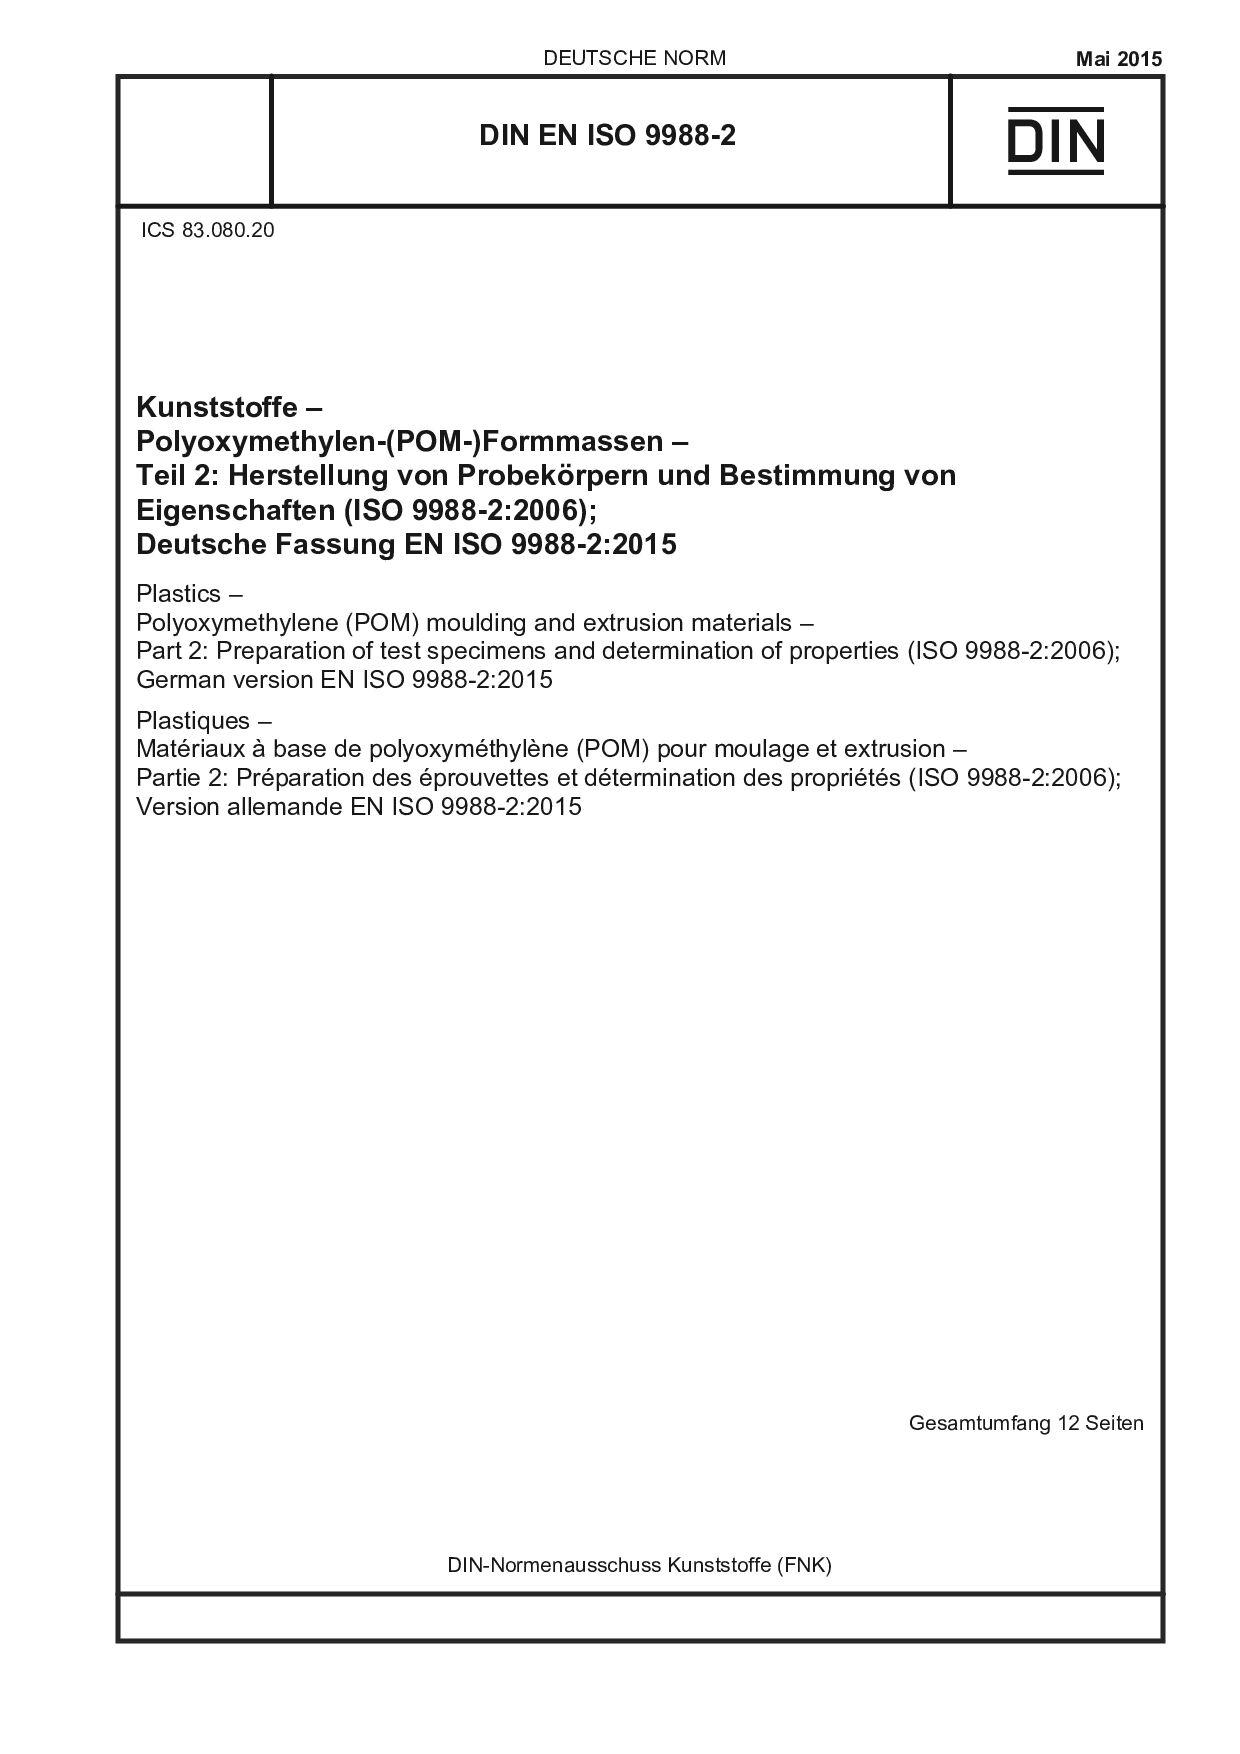 DIN EN ISO 9988-2:2015